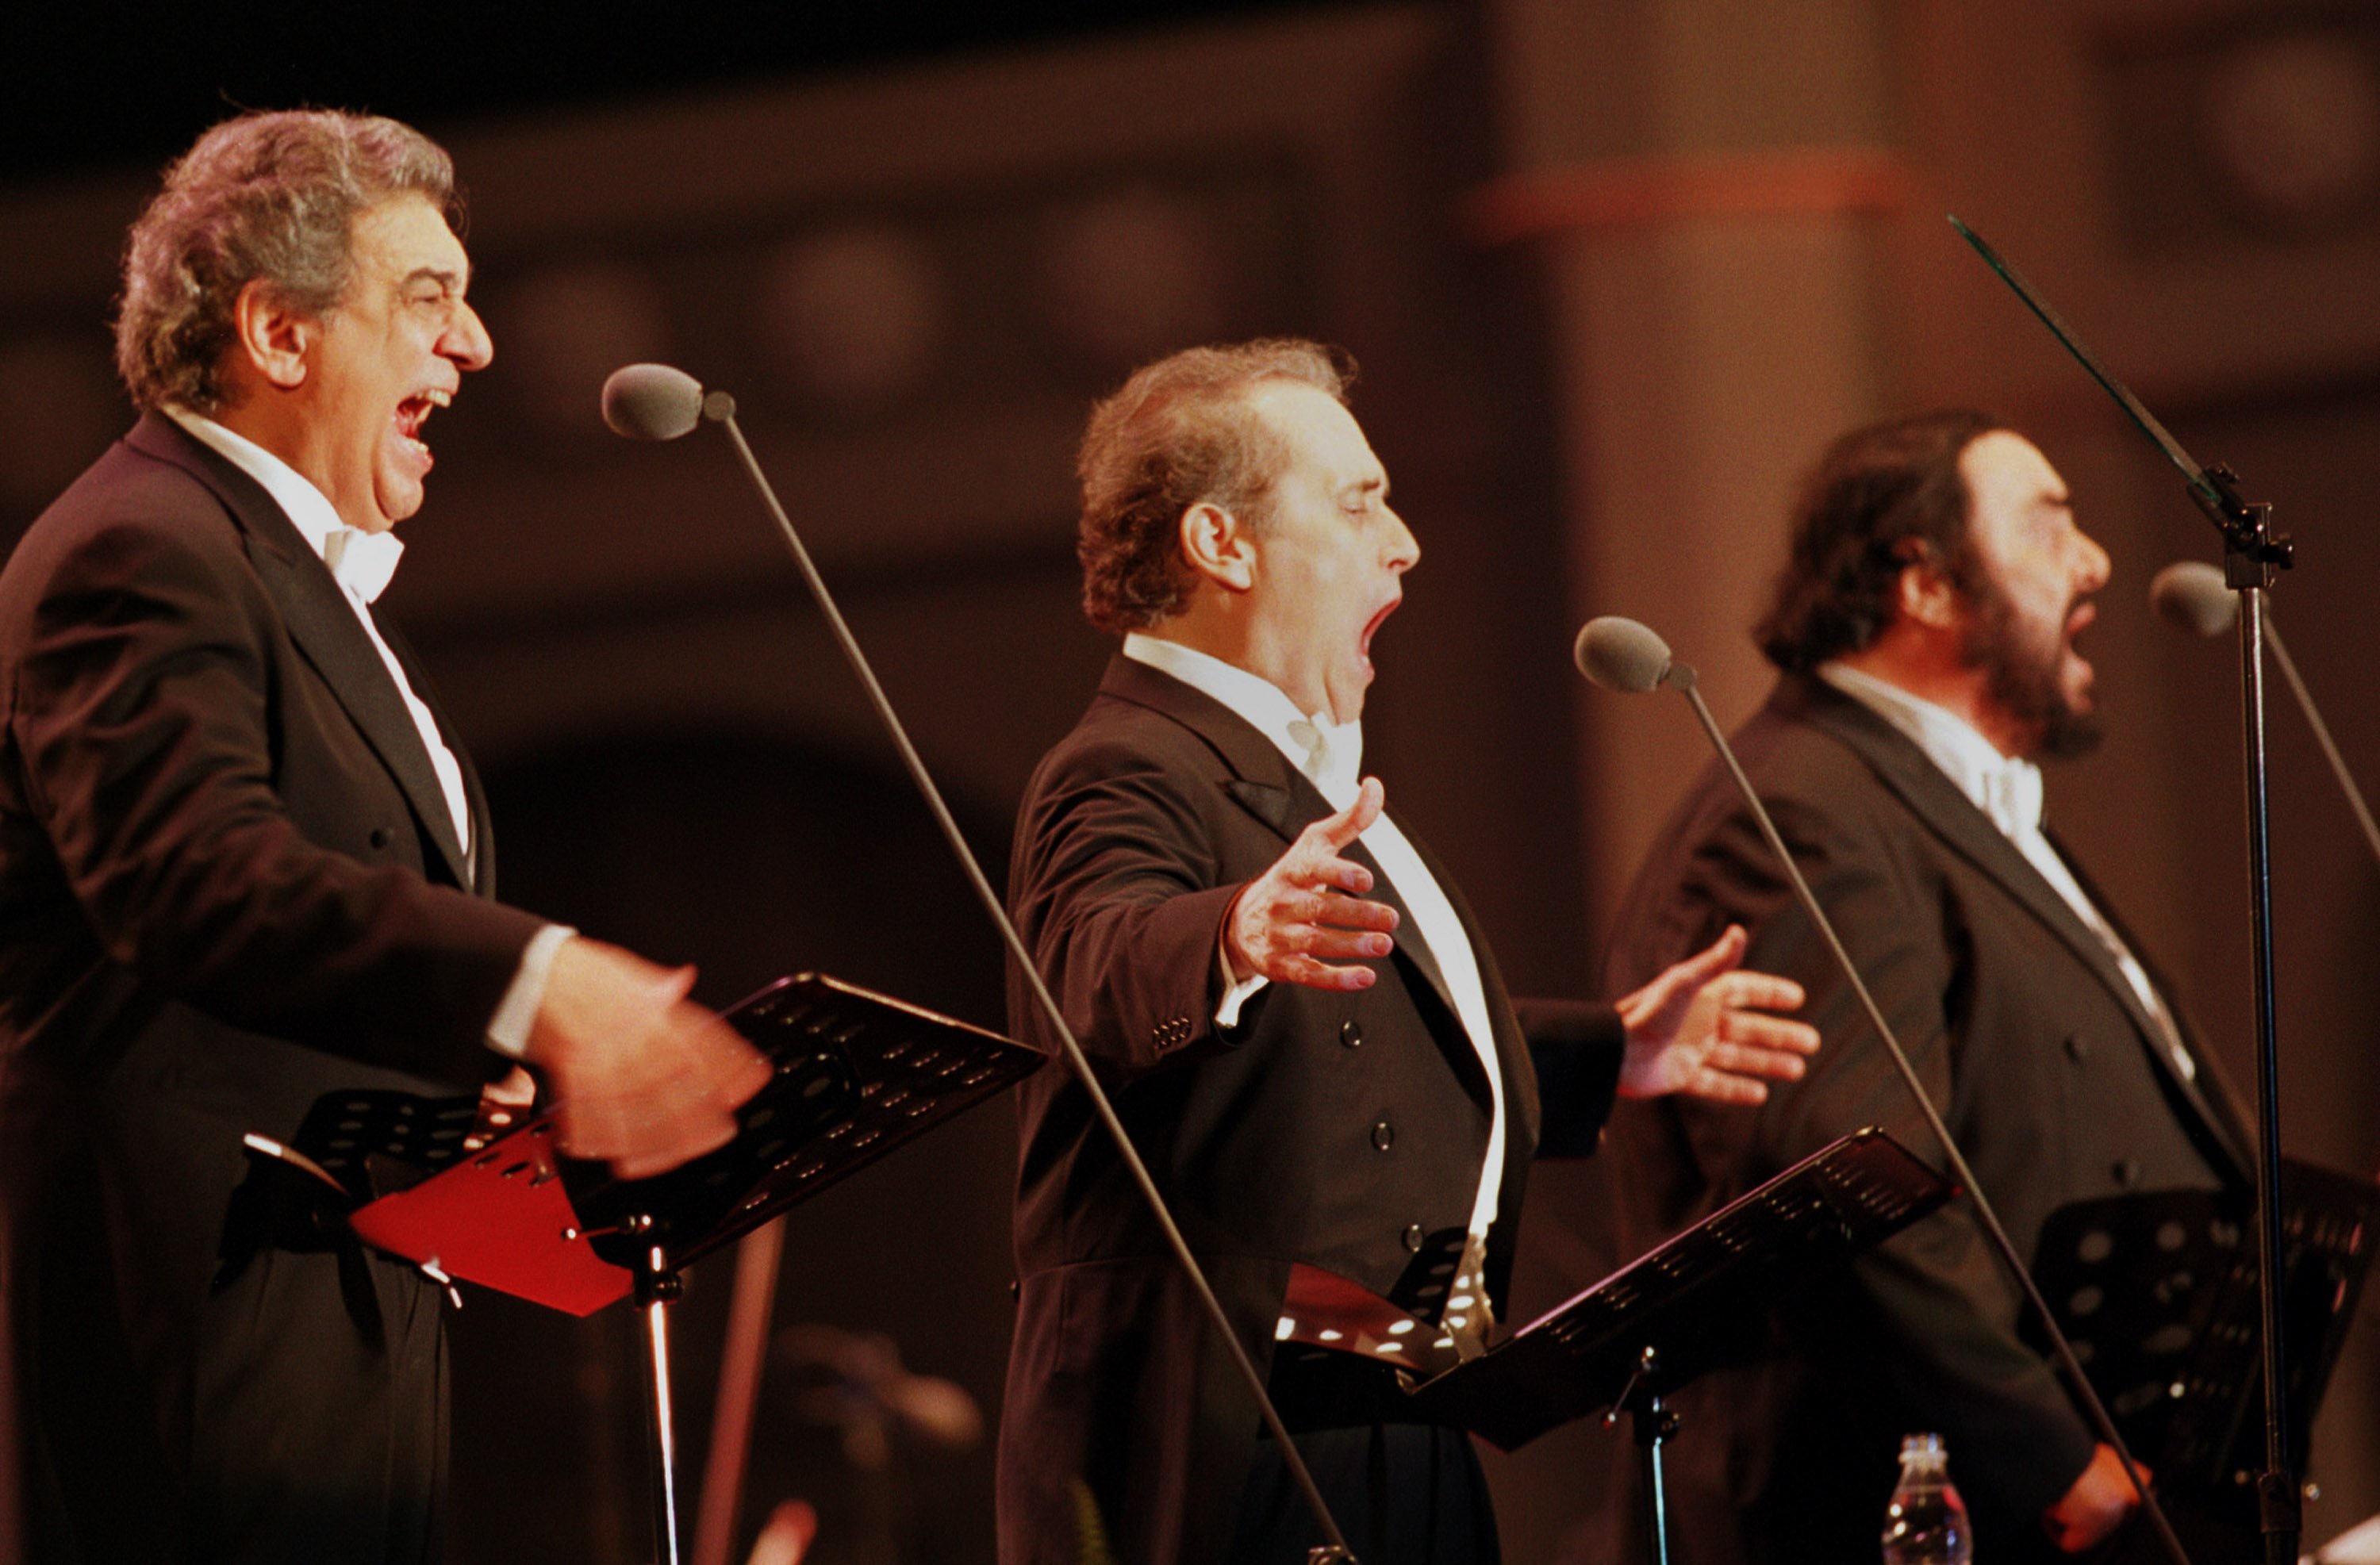 Plácido Domingo, José Carreras y Luciano Pavarotti en concierto de Los Tres Tenores en junio de 2001 en el estadio Chamsil Olympic de Seúl, Corea del Sur. | Foto: Getty Images